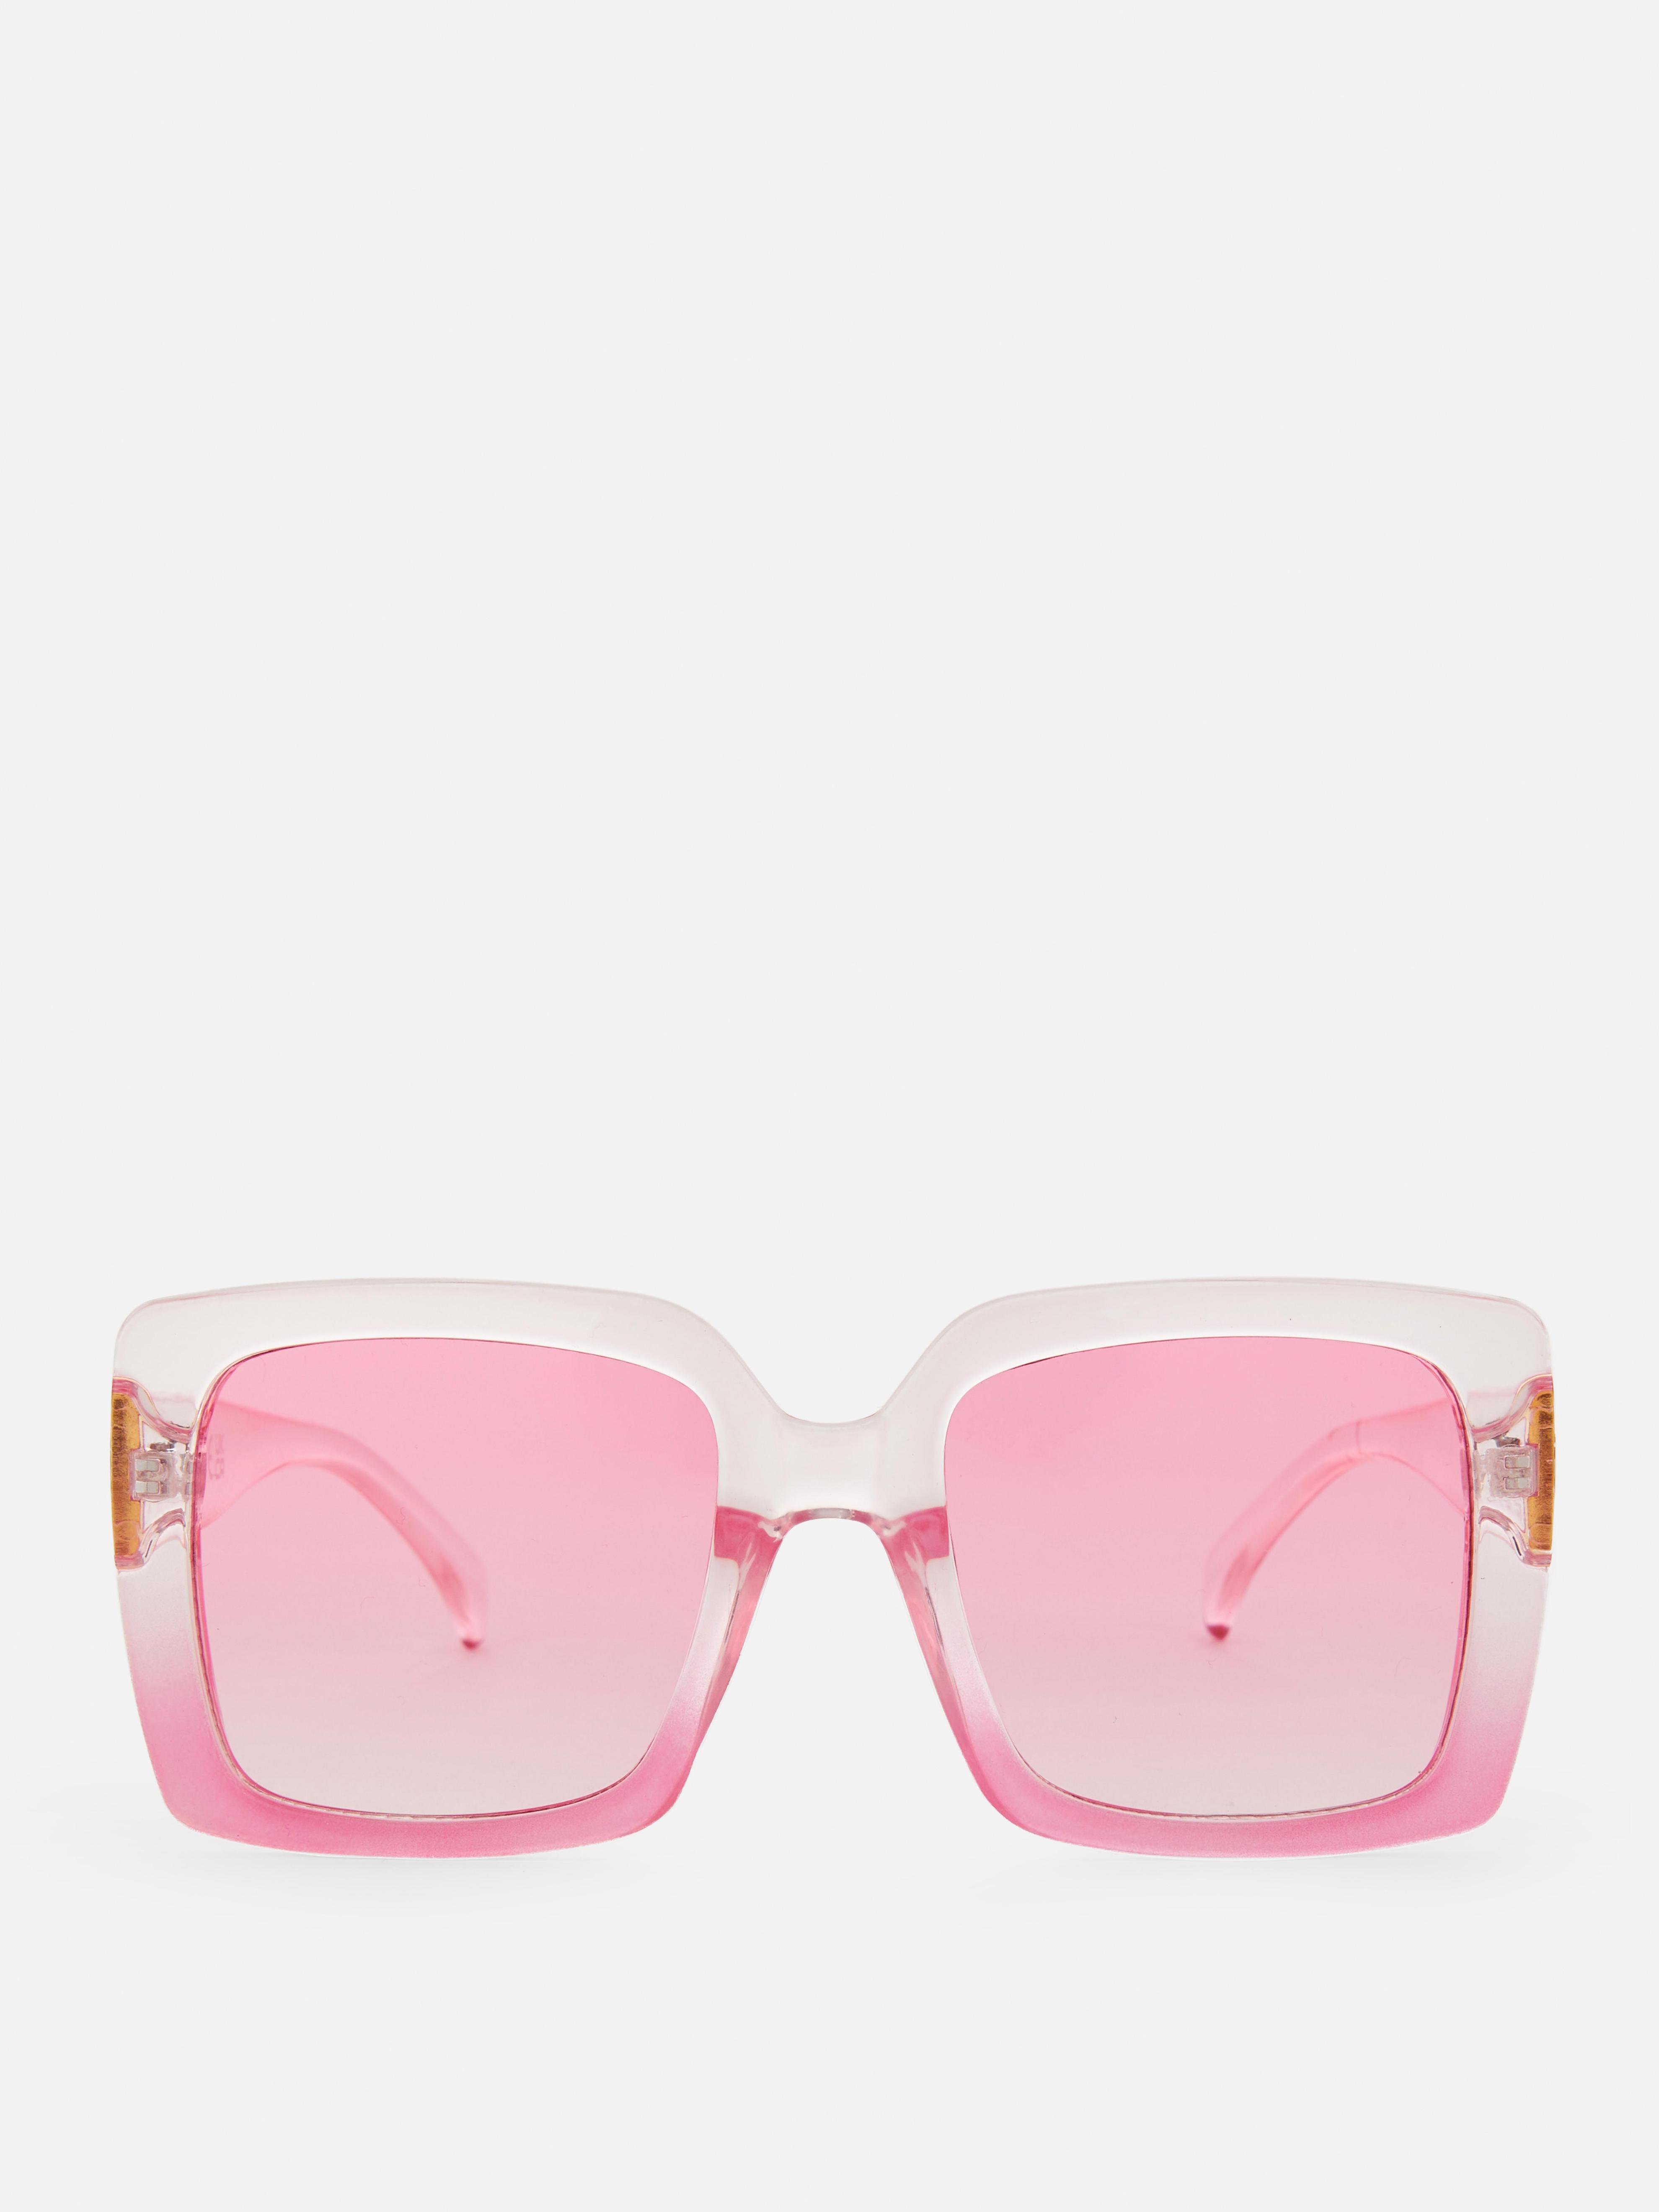 „Rita Ora“ Oversize-Sonnenbrille mit eckigem Rahmen für 5€ in Primark